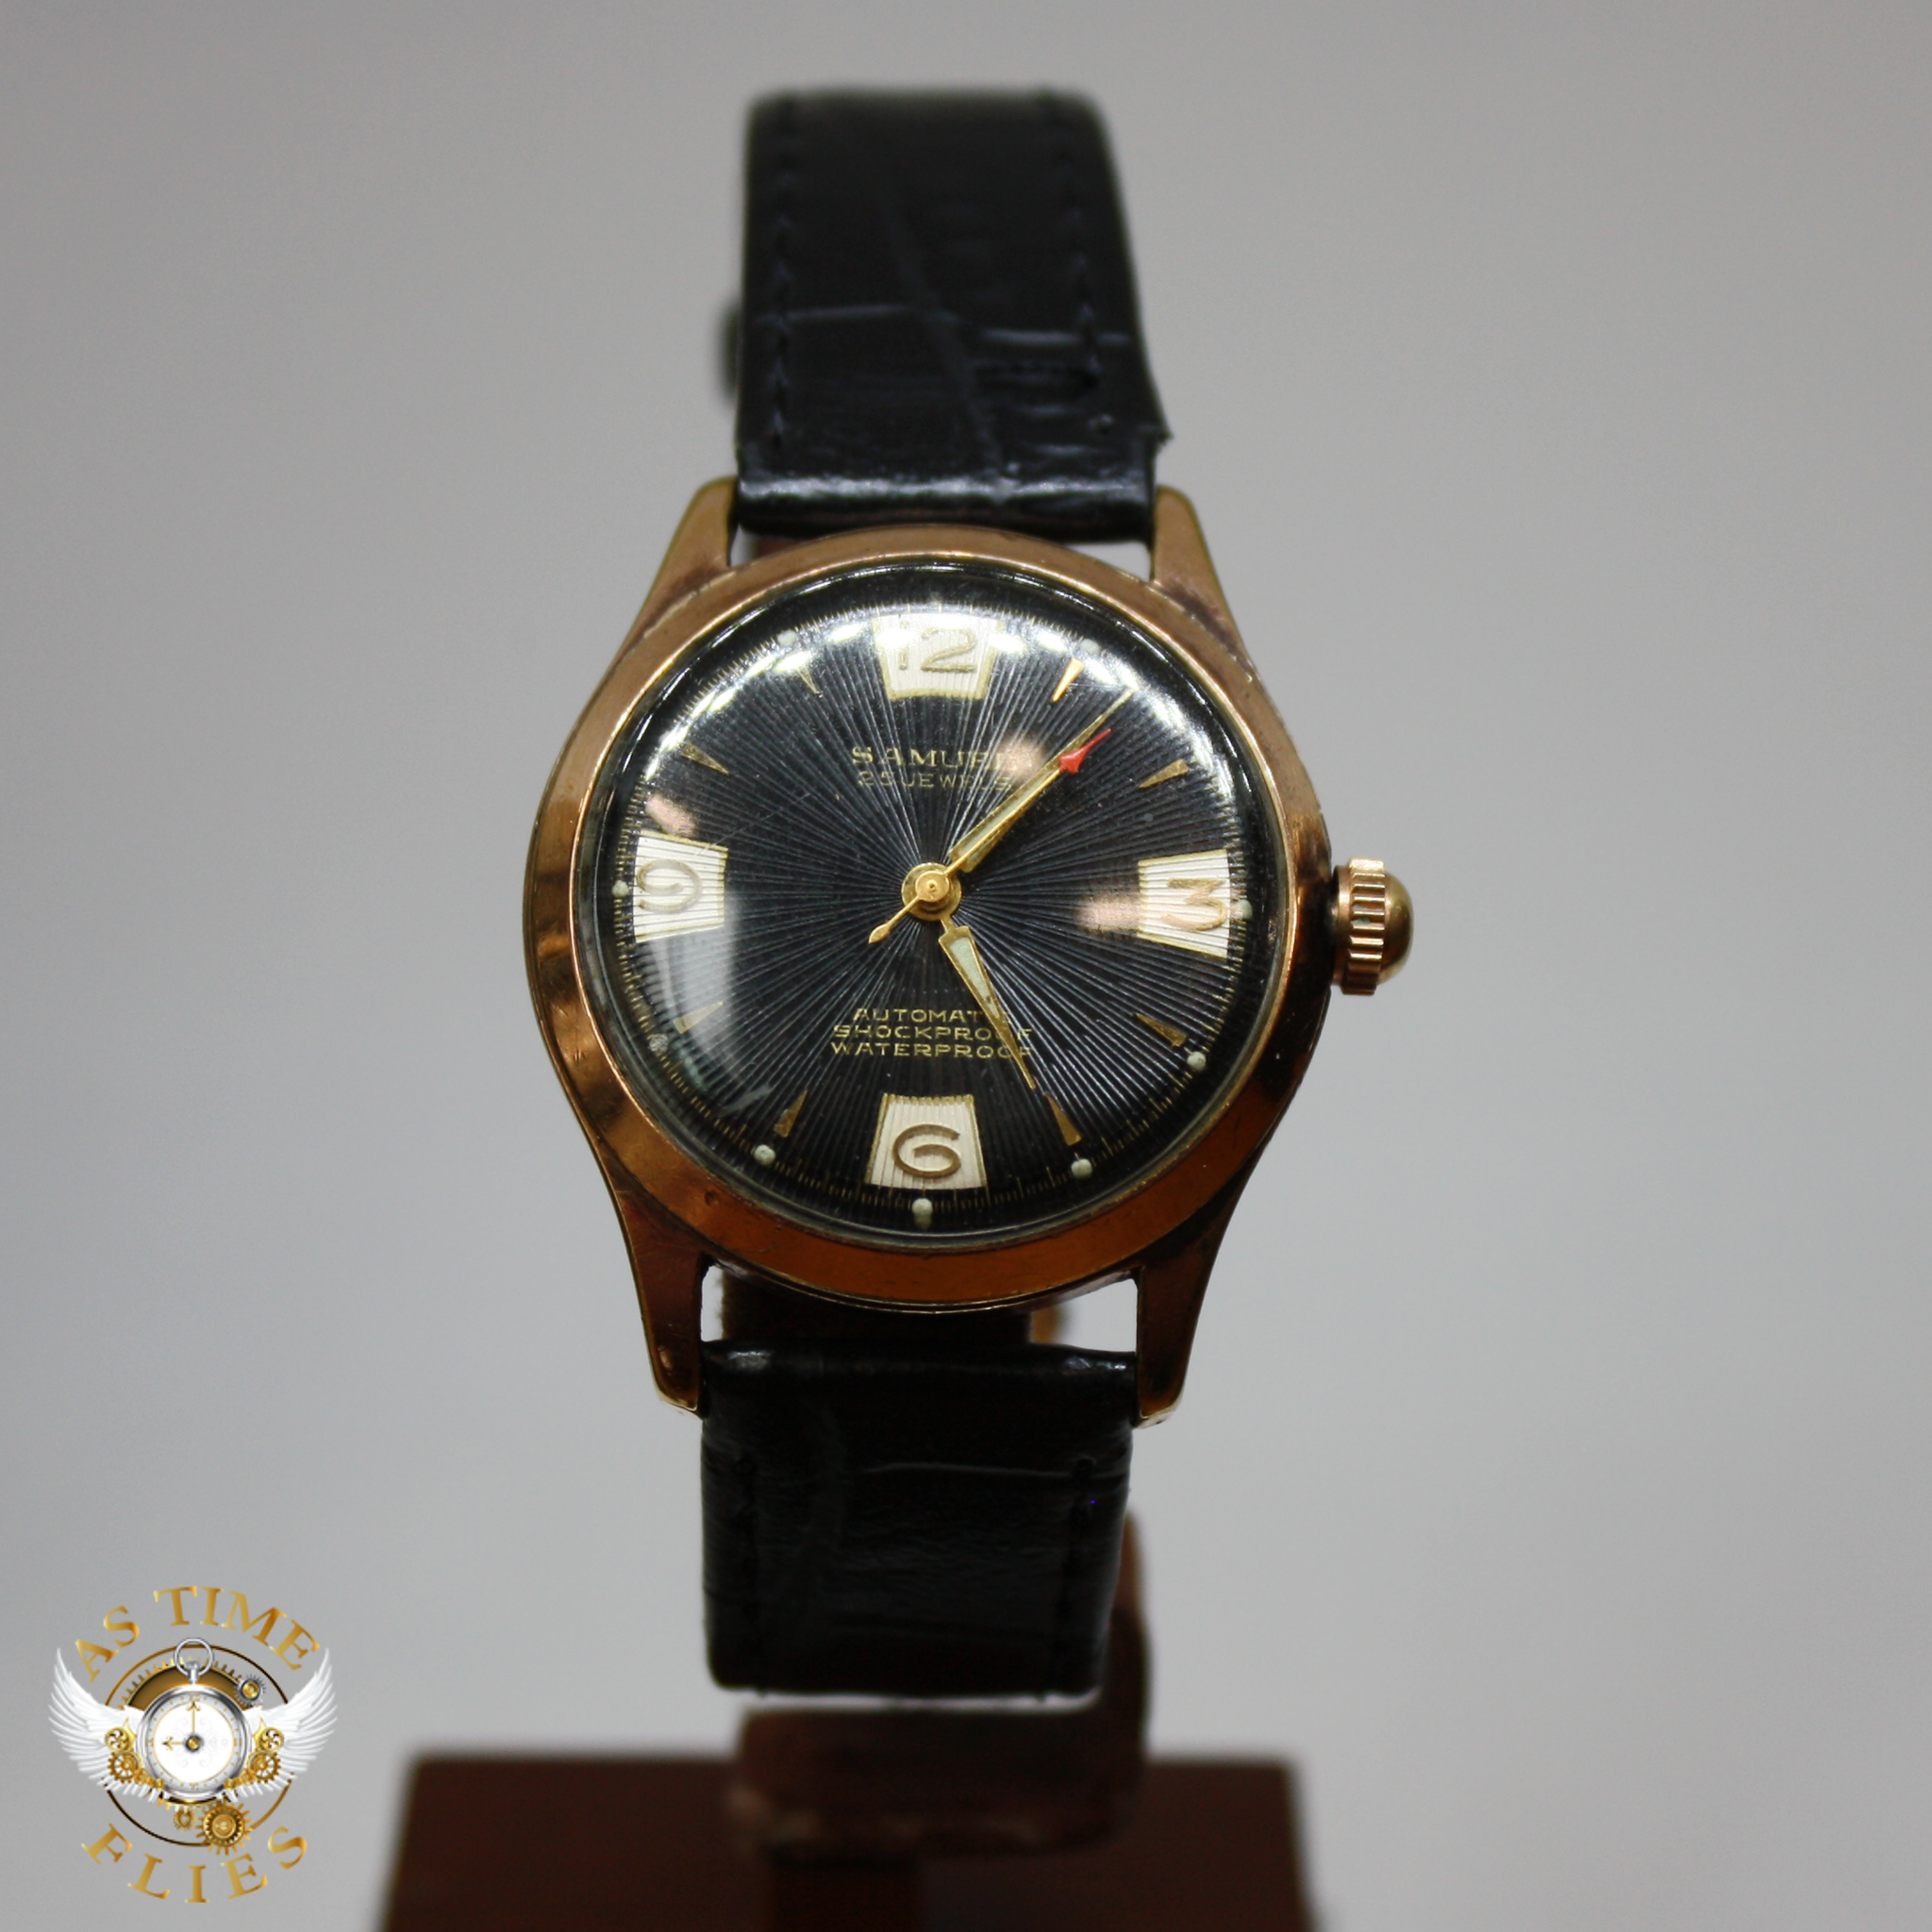 Samuel Watch Co. 25J 1960's watch